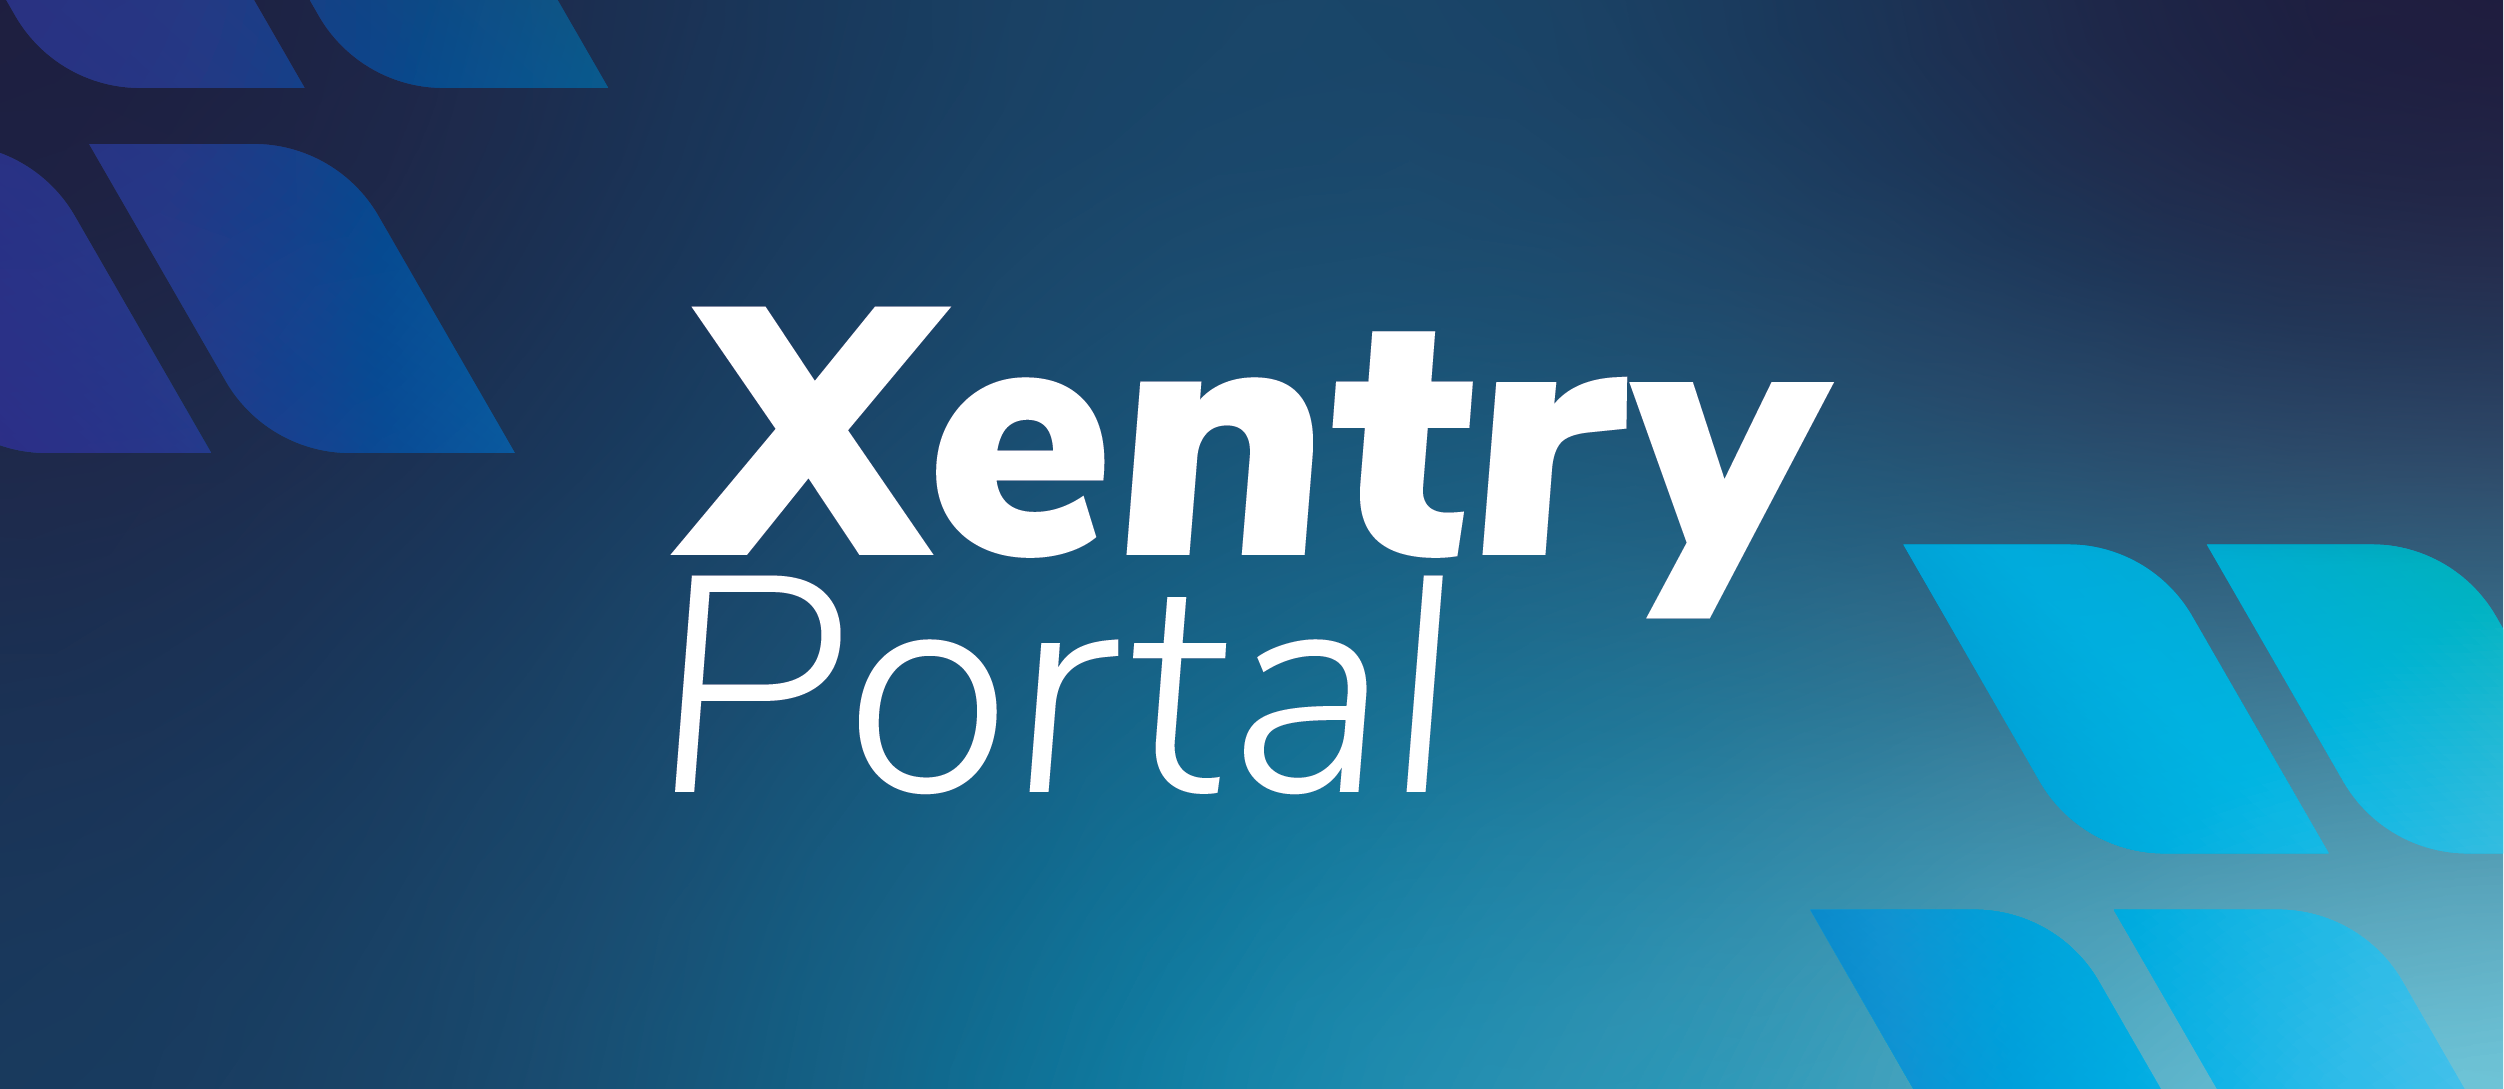 Xentry Portal